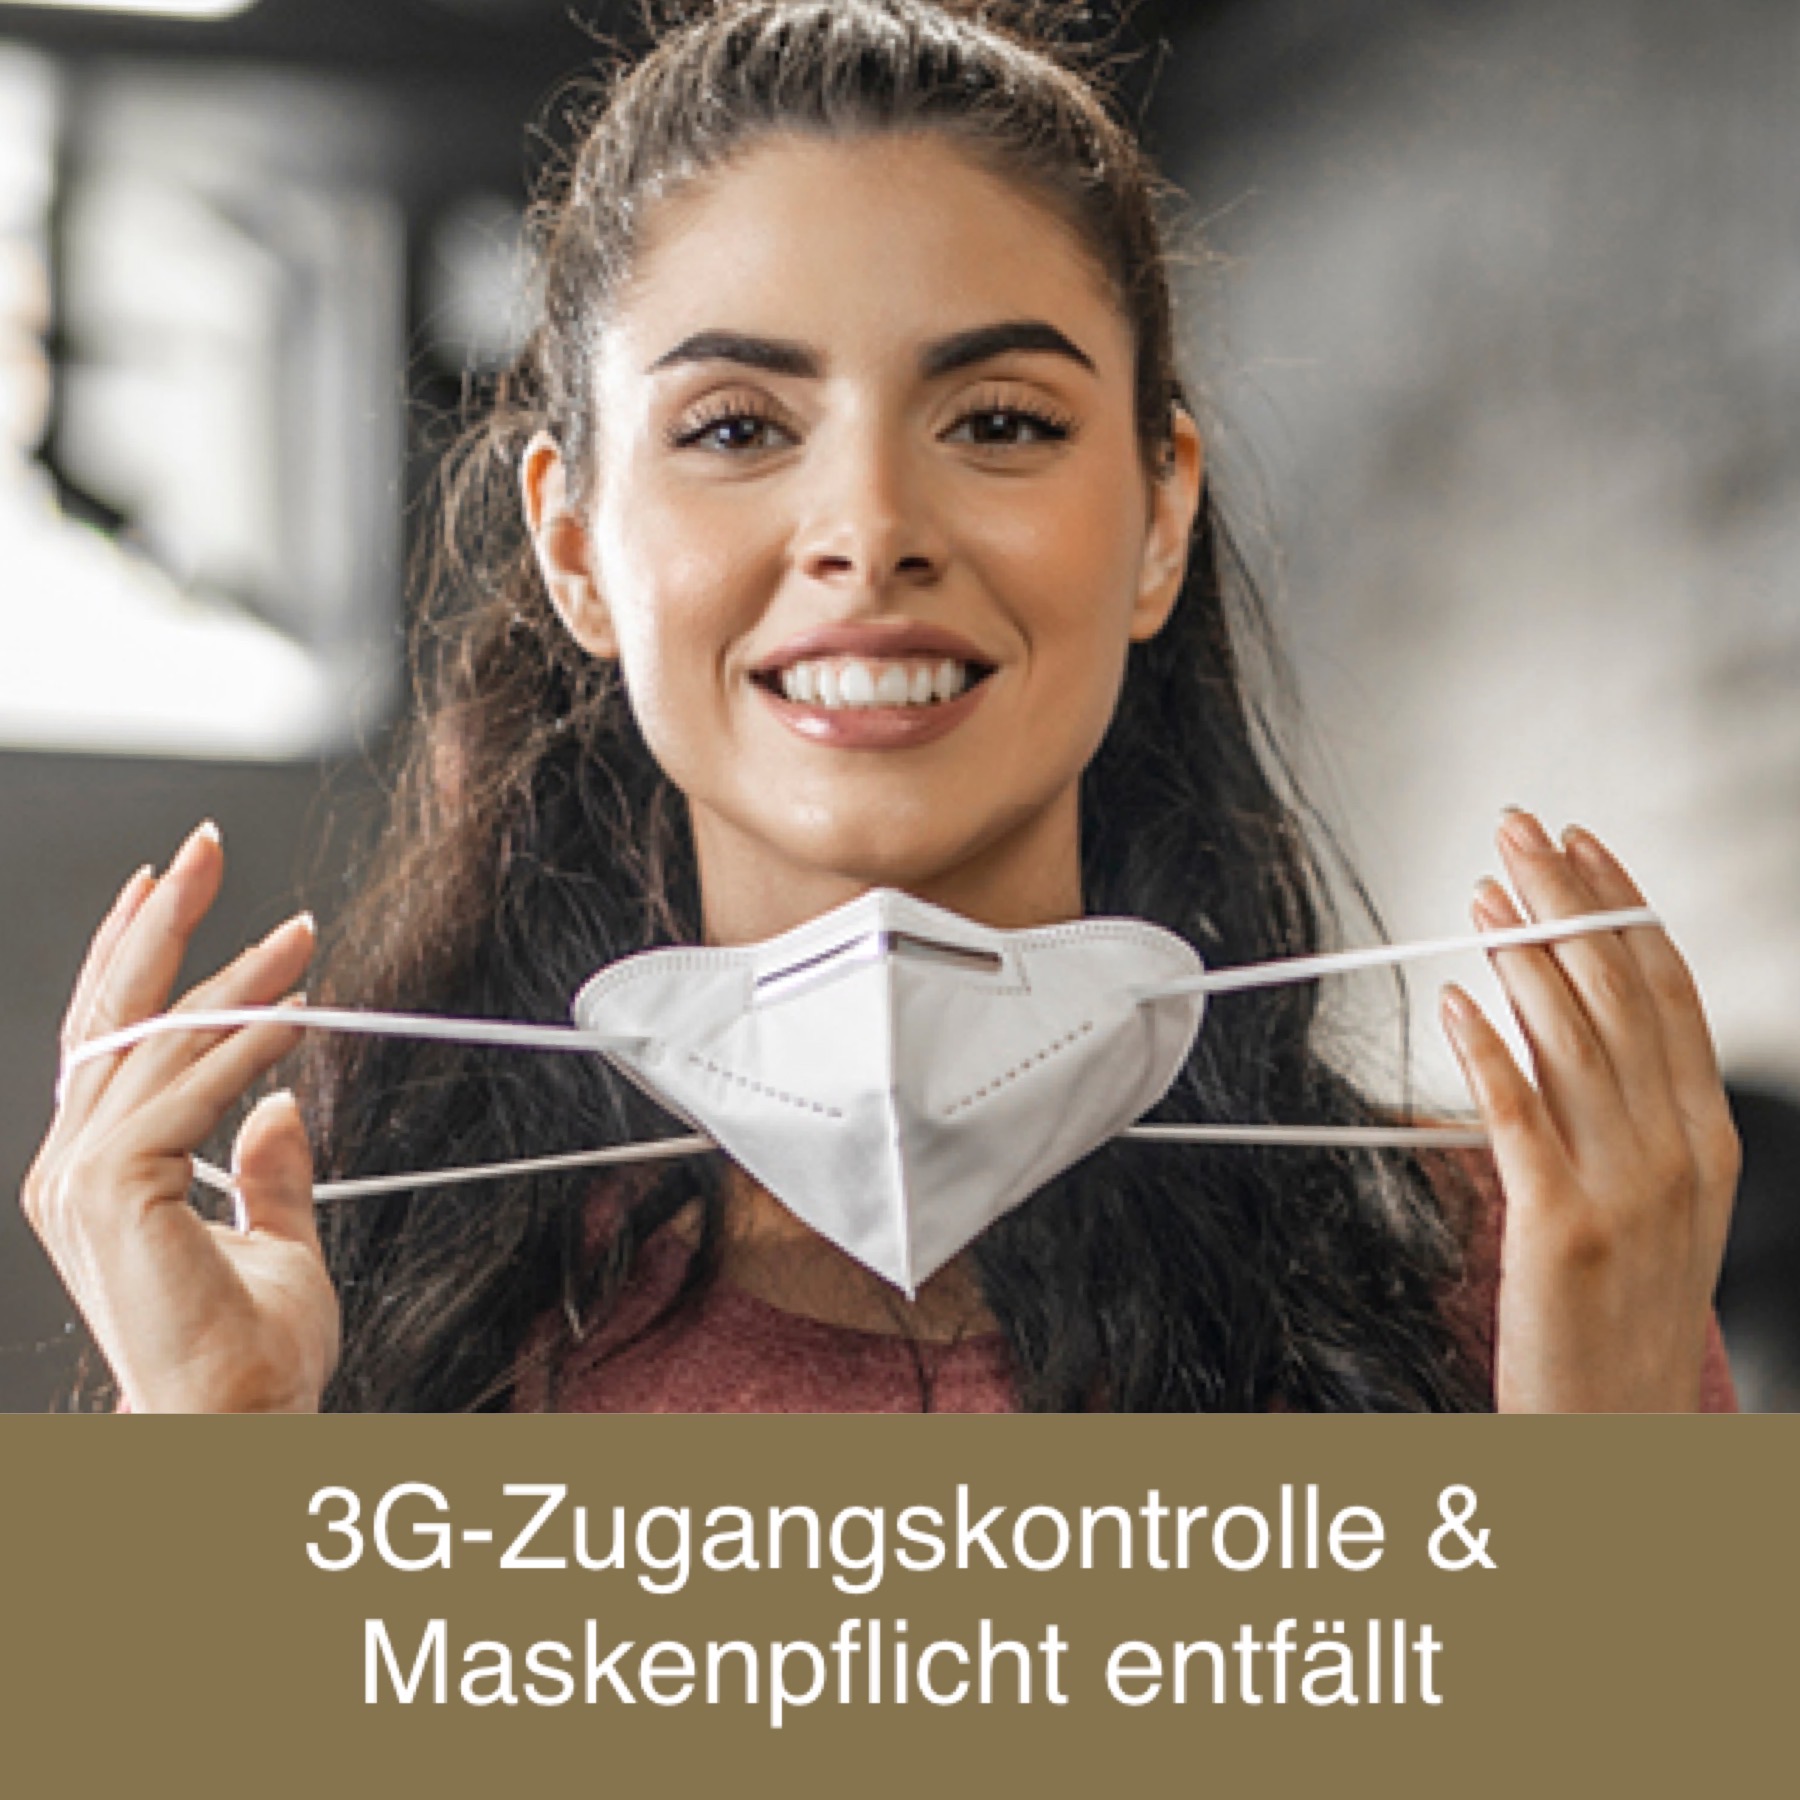 3G-Zugangskontrolle & Maskenpflicht entfällt